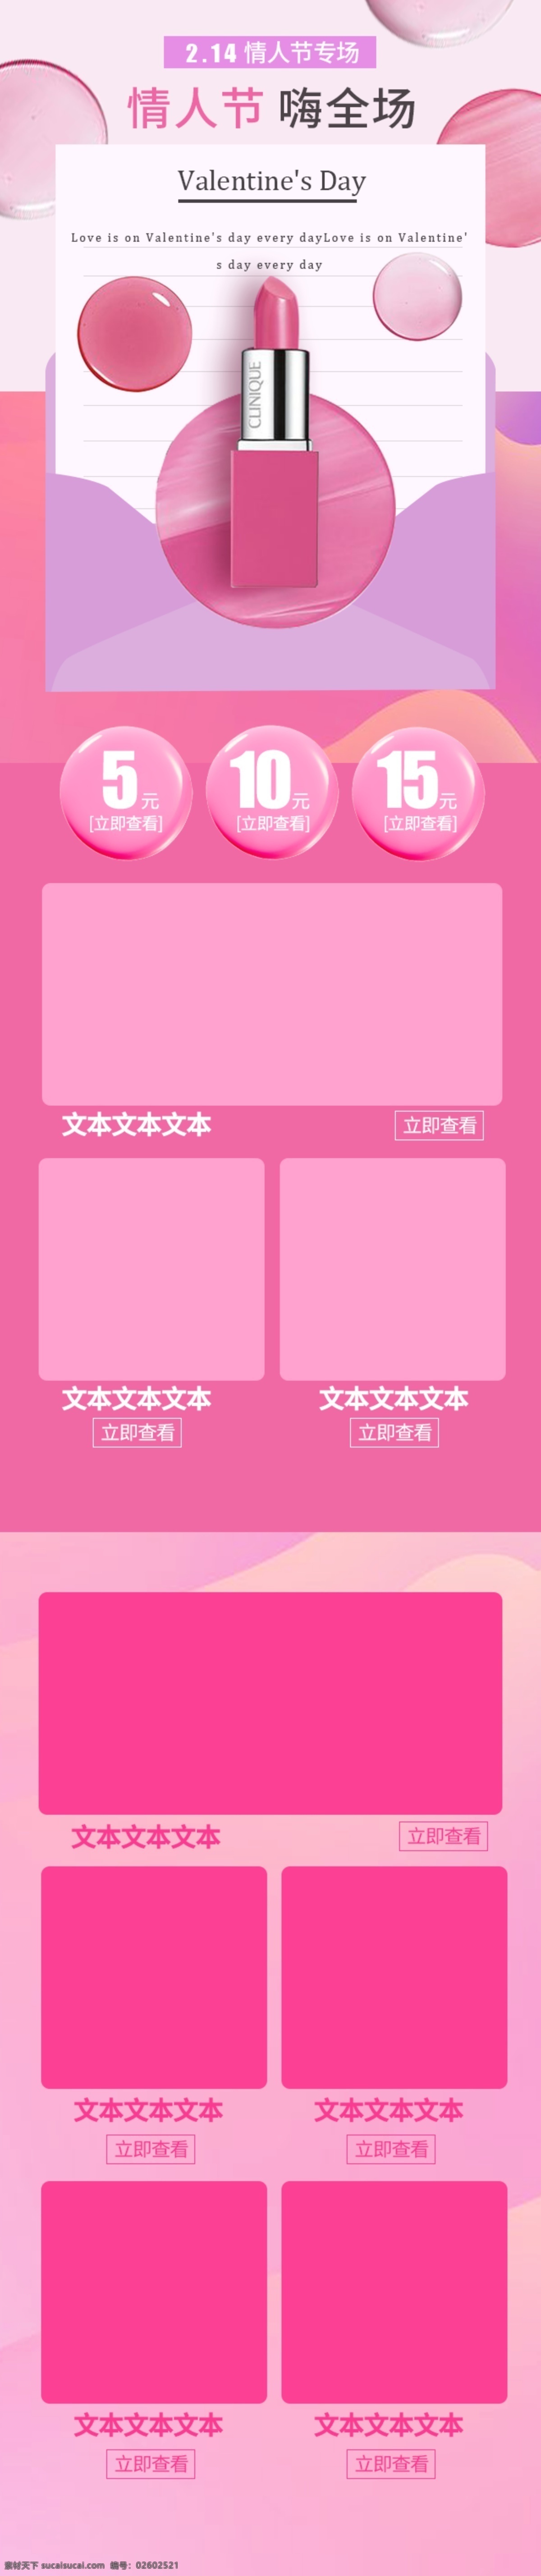 电商 淘宝 2.14 情人节 粉色 口红 首页 模板 化妆品 简约 首页模板 移动端